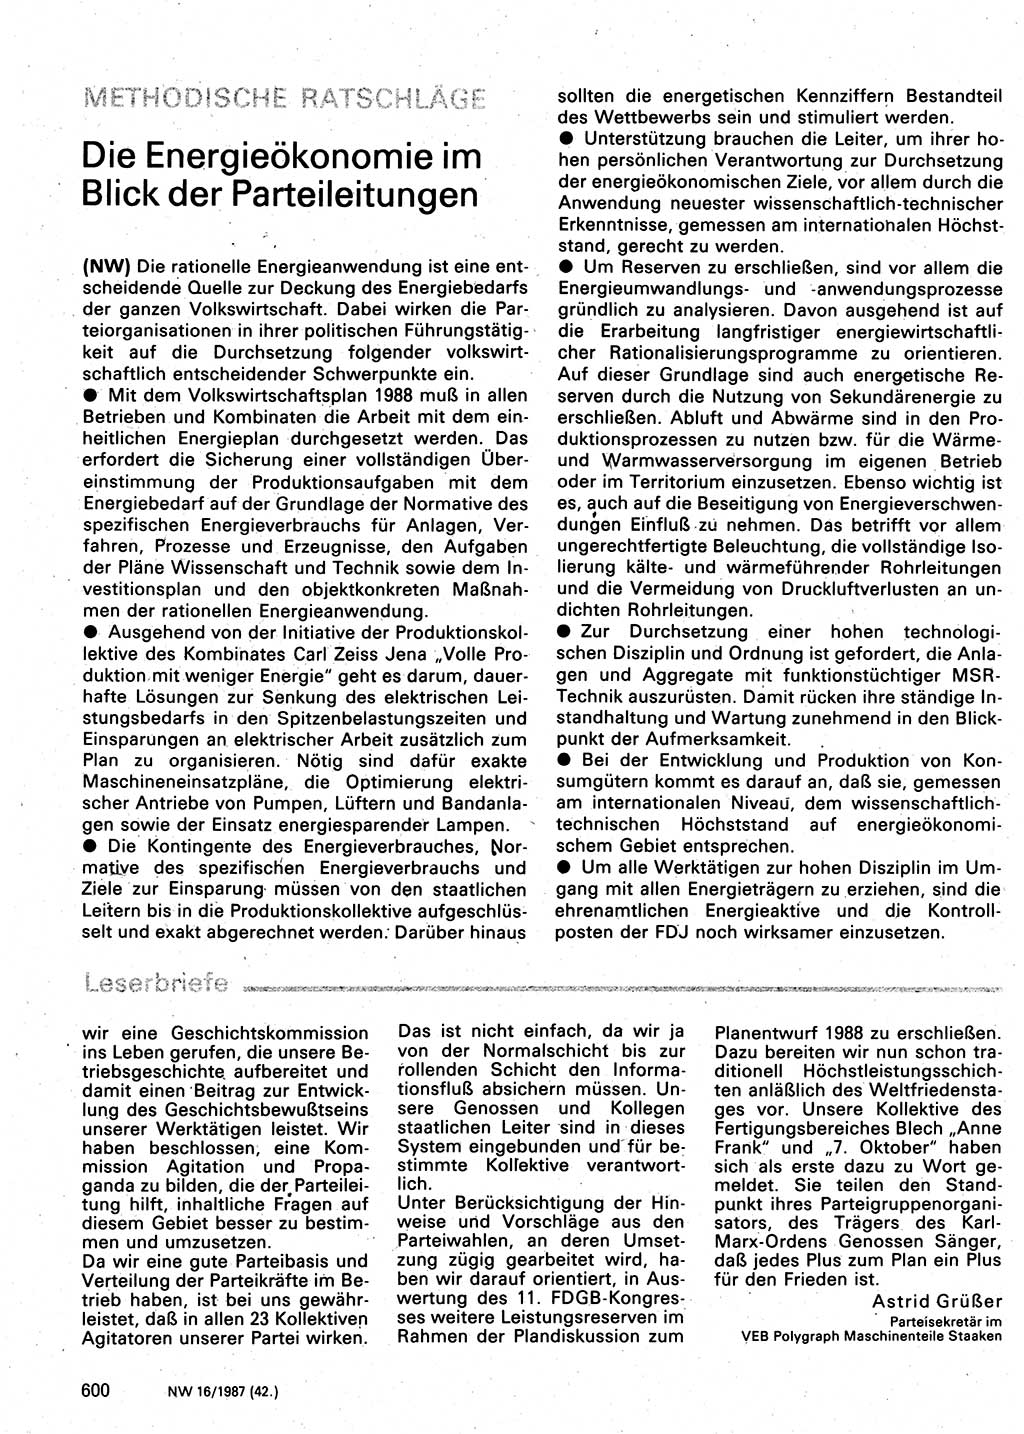 Neuer Weg (NW), Organ des Zentralkomitees (ZK) der SED (Sozialistische Einheitspartei Deutschlands) für Fragen des Parteilebens, 42. Jahrgang [Deutsche Demokratische Republik (DDR)] 1987, Seite 600 (NW ZK SED DDR 1987, S. 600)